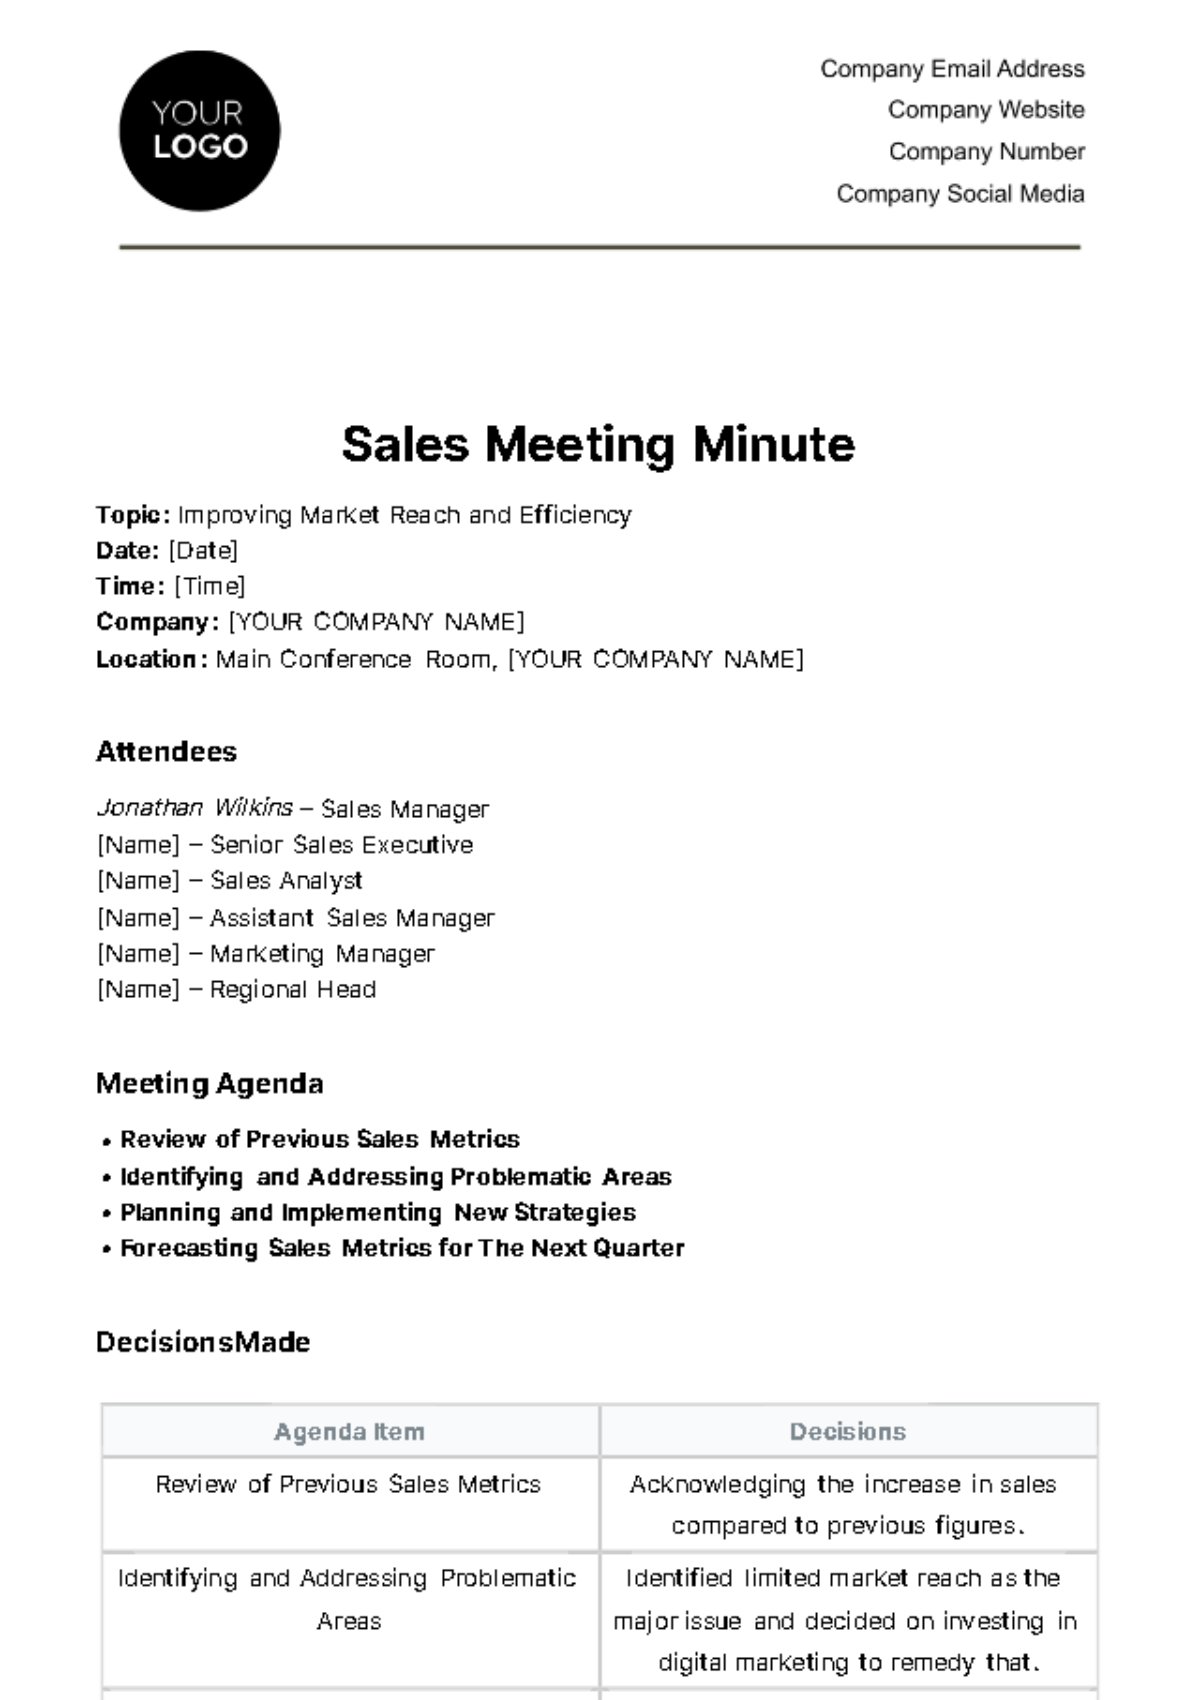 Sales Meeting Minute Template